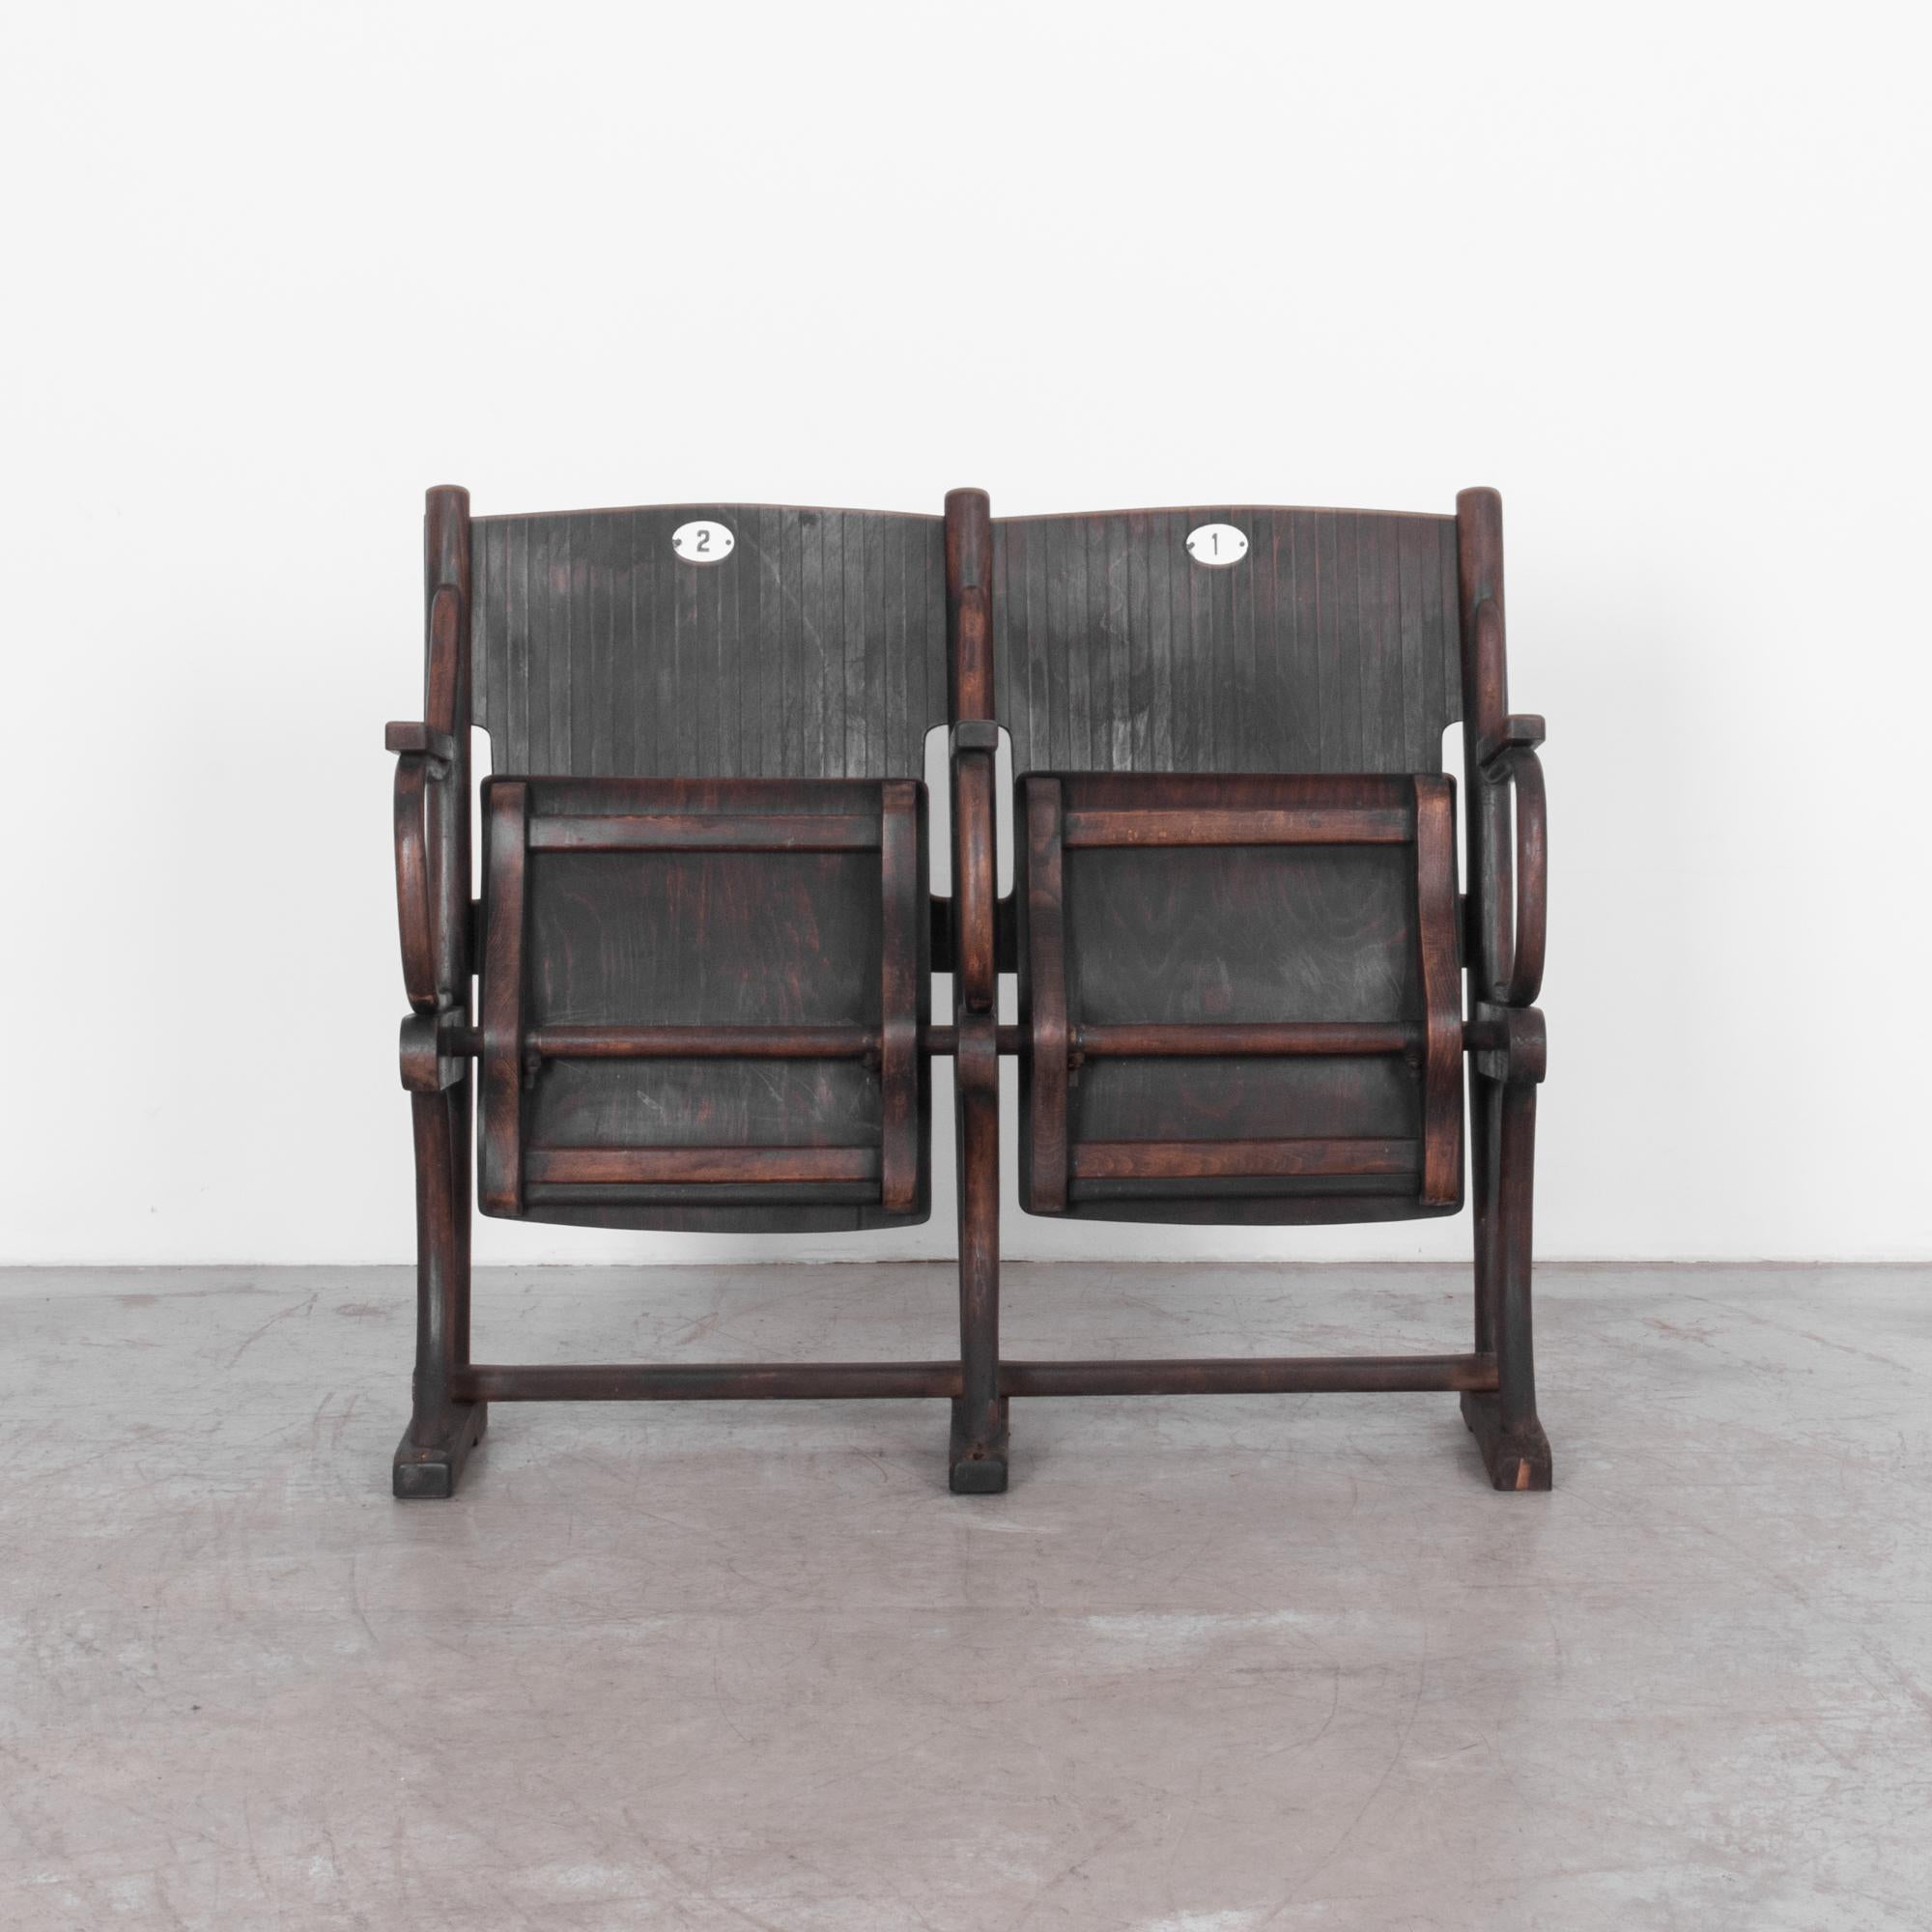 Voici une trouvaille rare pour les amateurs de charme vintage : les sièges de cinéma autrichiens en bois rares des années 1900. Avec une riche patine brun foncé qui évoque des décennies d'histoire, ces sièges dégagent une élégance intemporelle qui